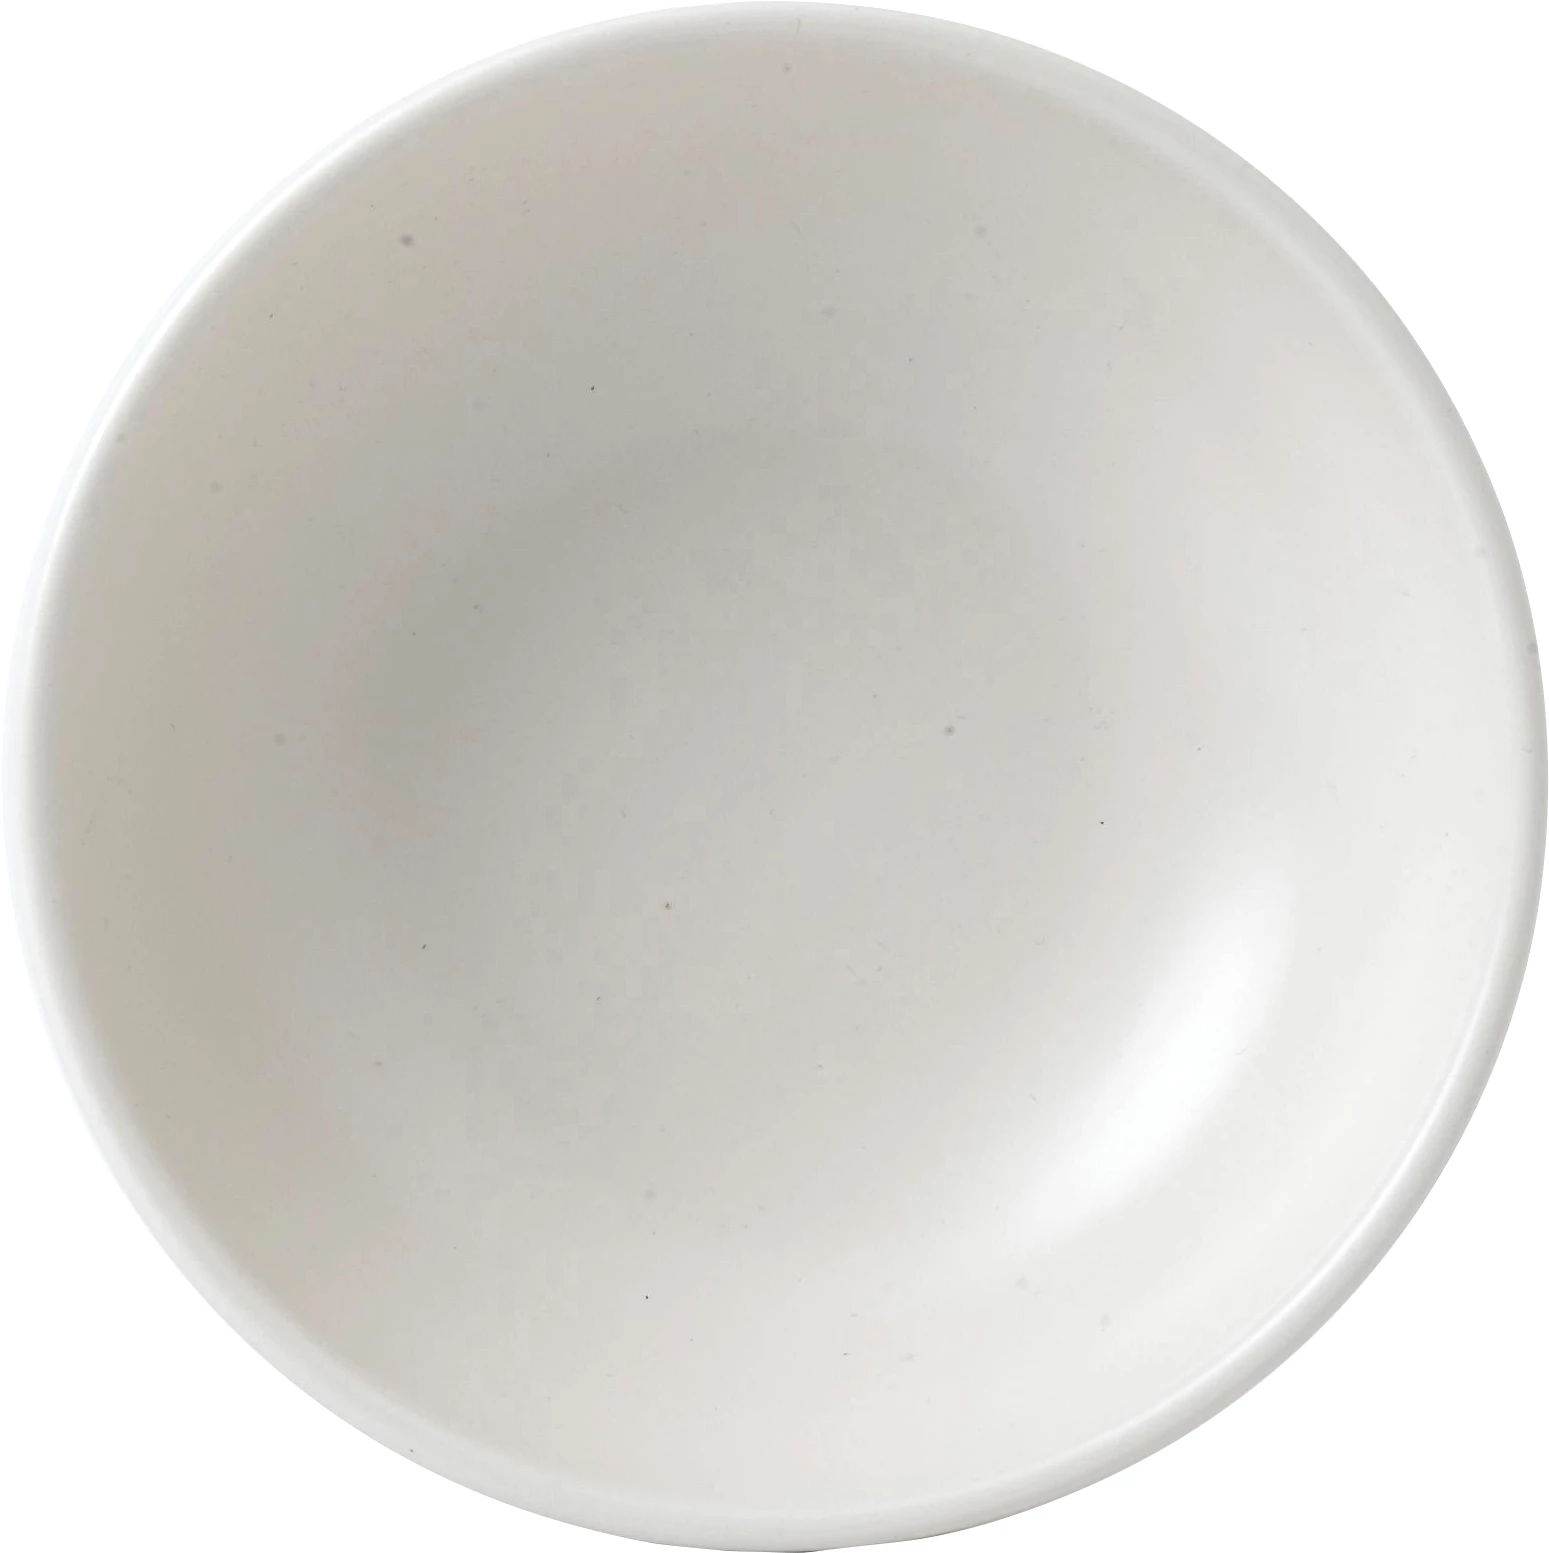 Dudson Evolution Pearl skål, hvid, 85 cl, ø17,8 cm